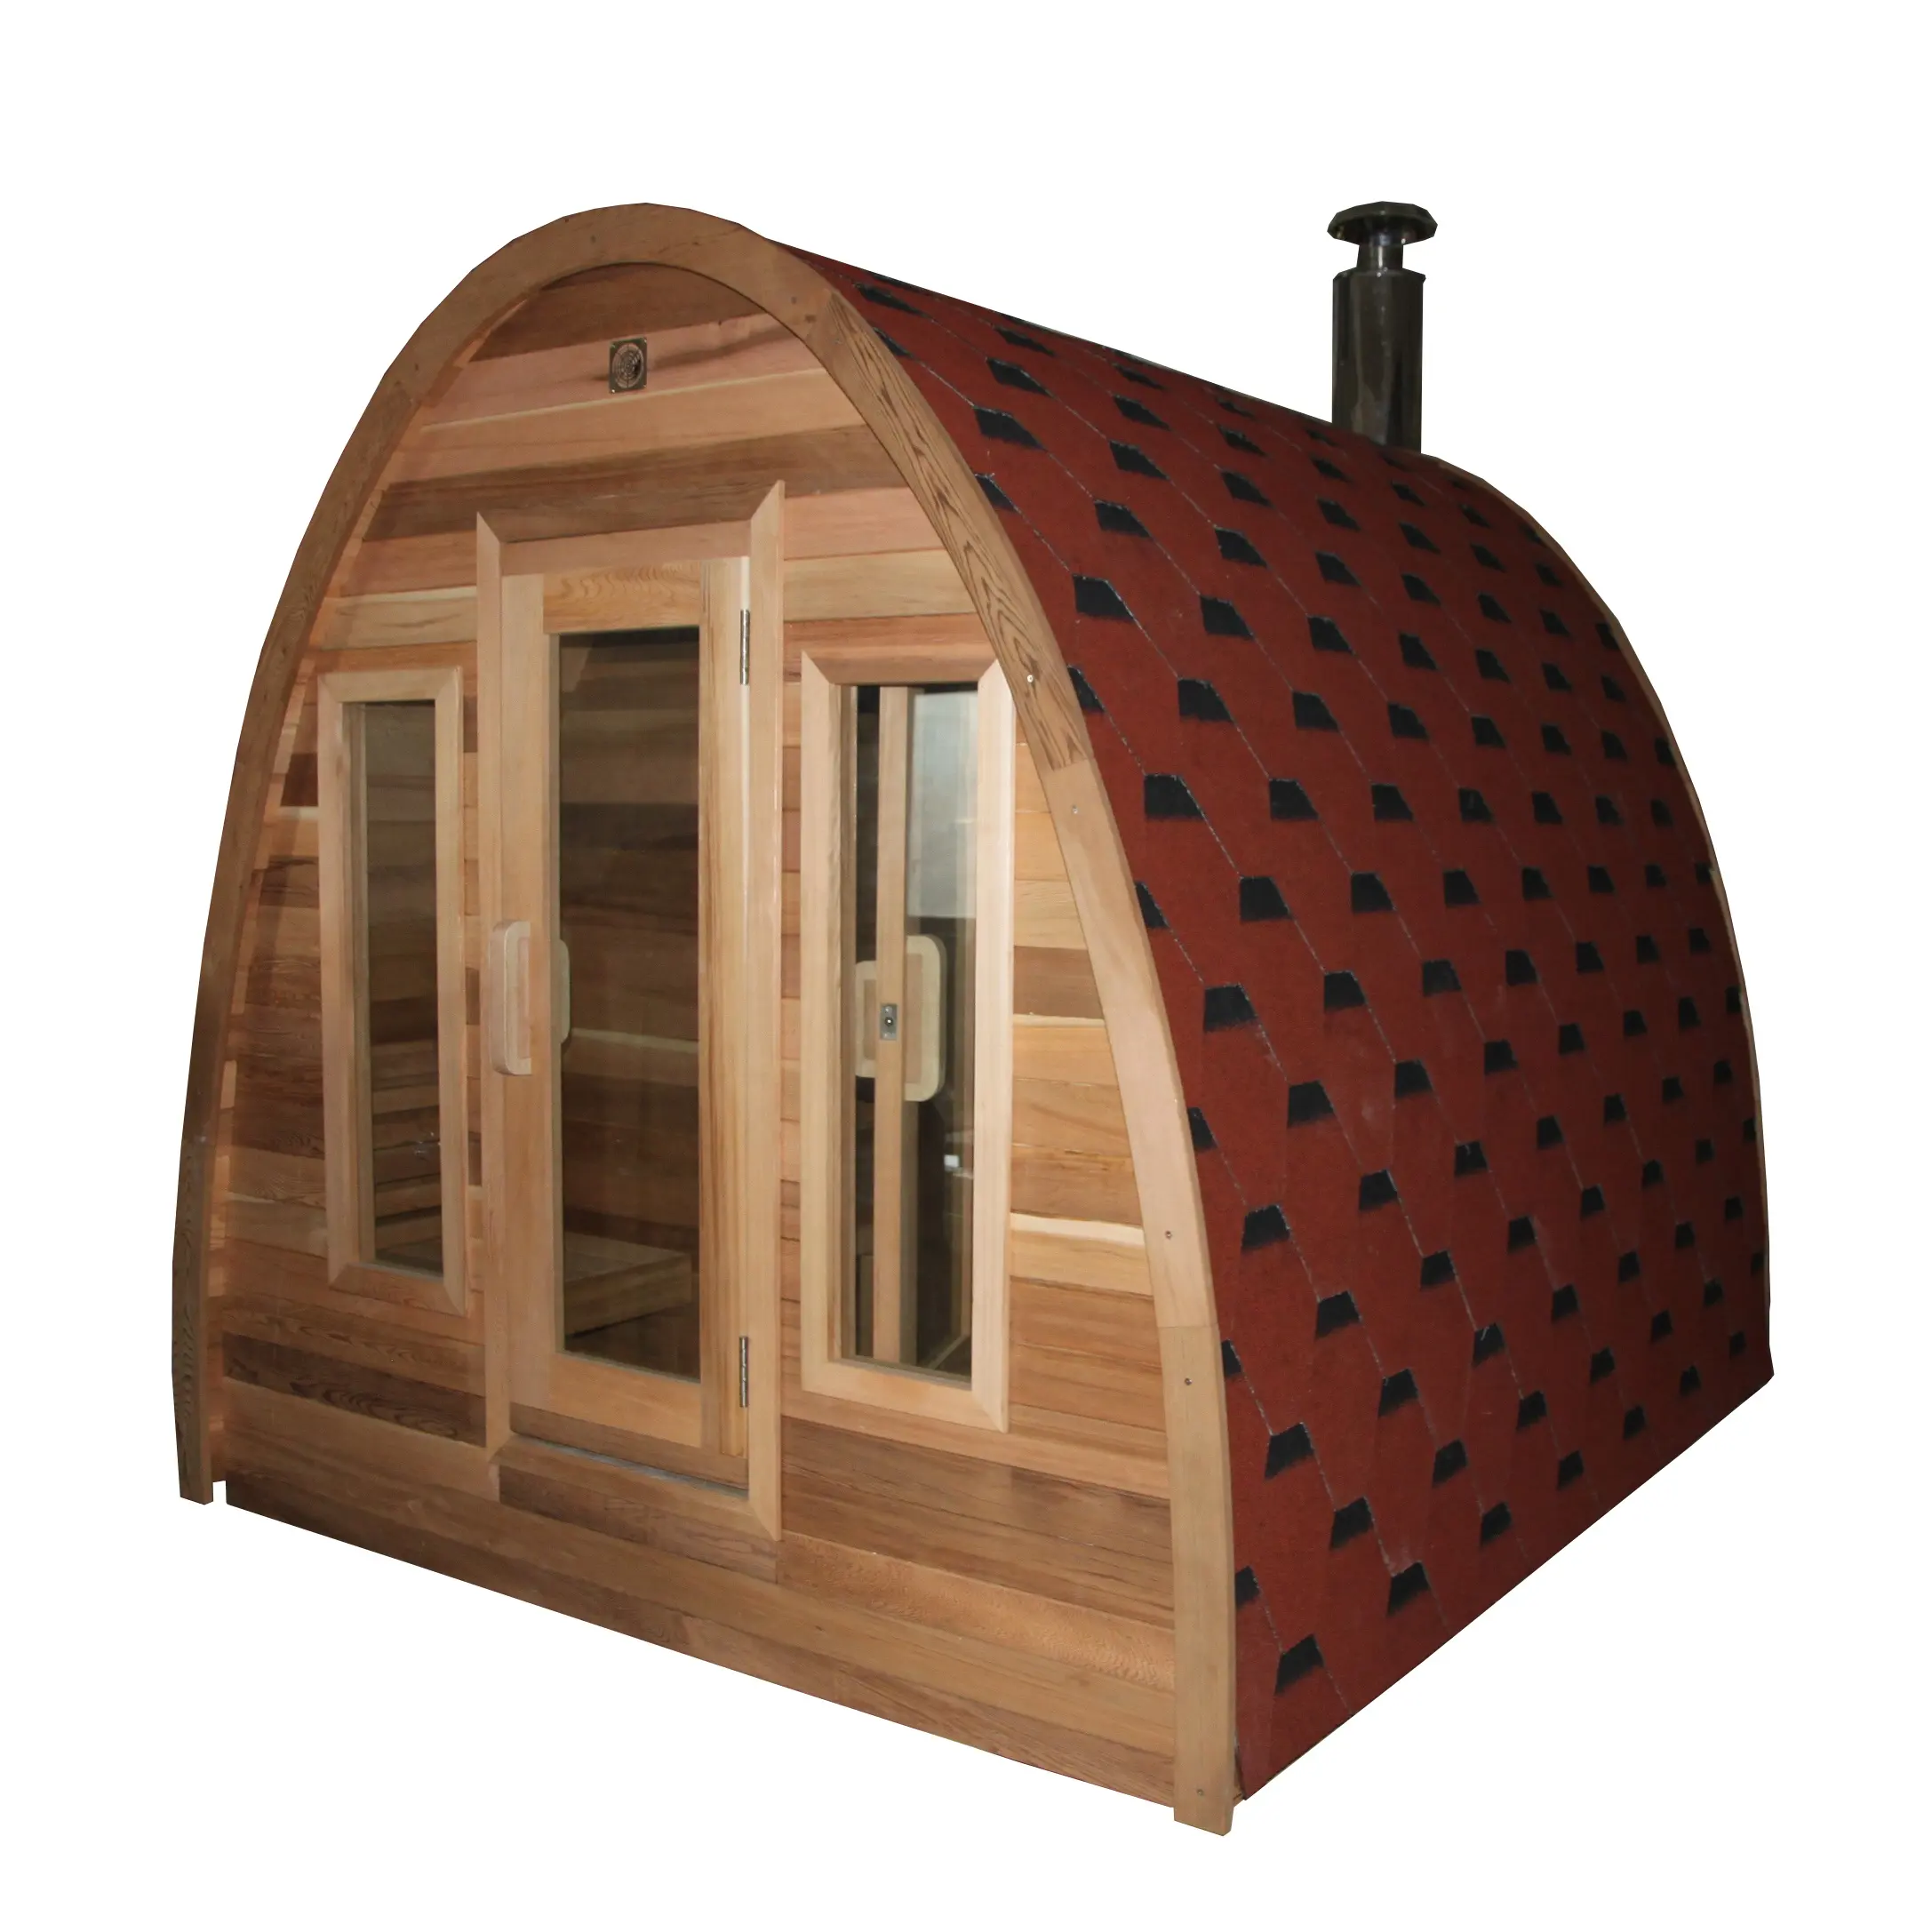 Eccellente qualità all'ingrosso nuovo Design canadese cedro rosso in legno Sauna all'aperto con stufa elettrica per Sauna